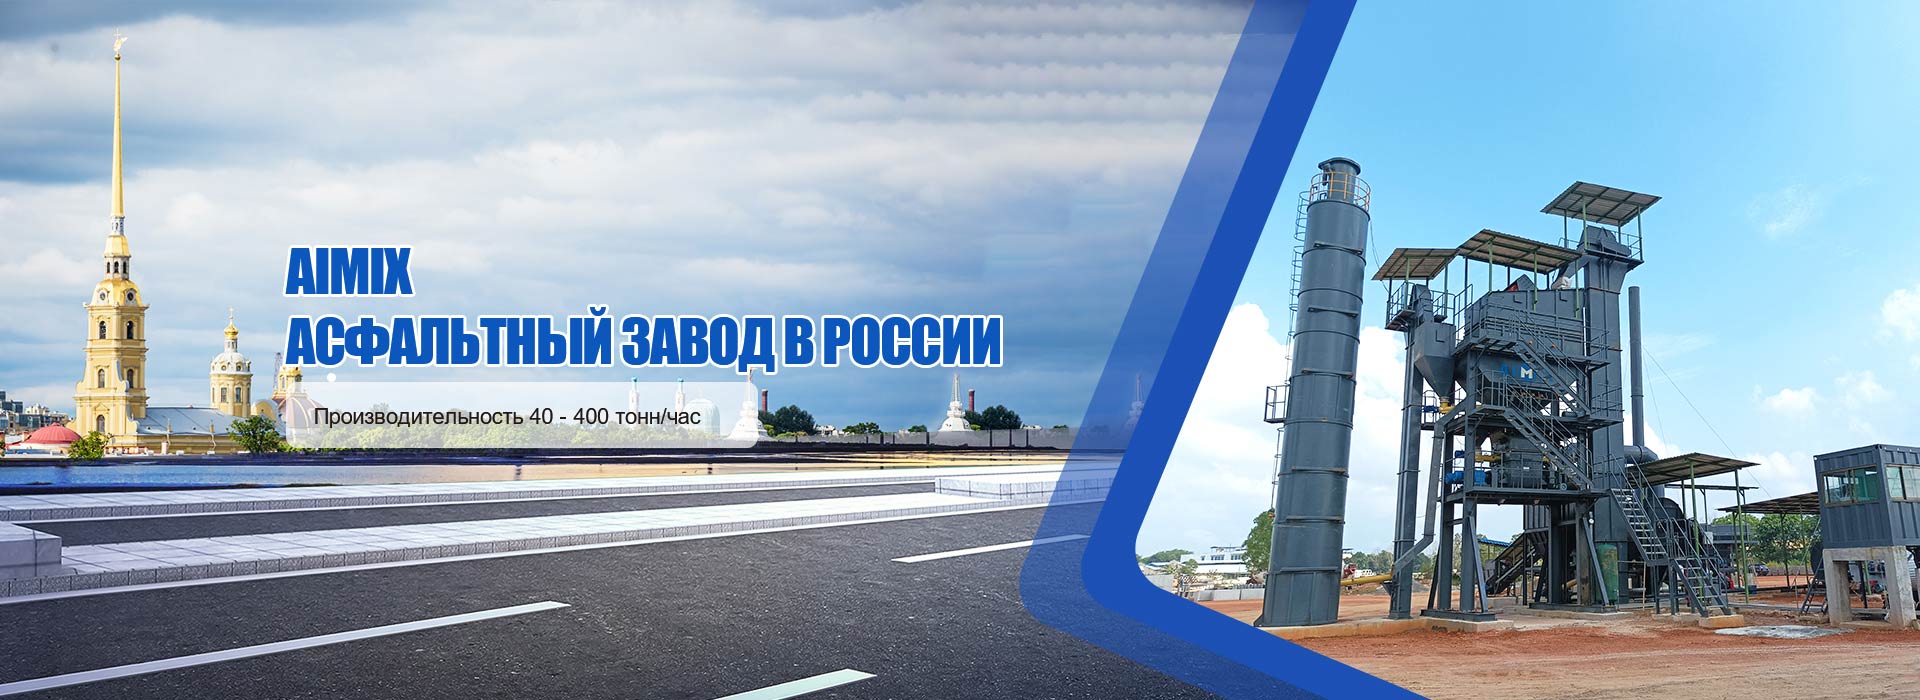 AIMIX Асфальтный завод в России